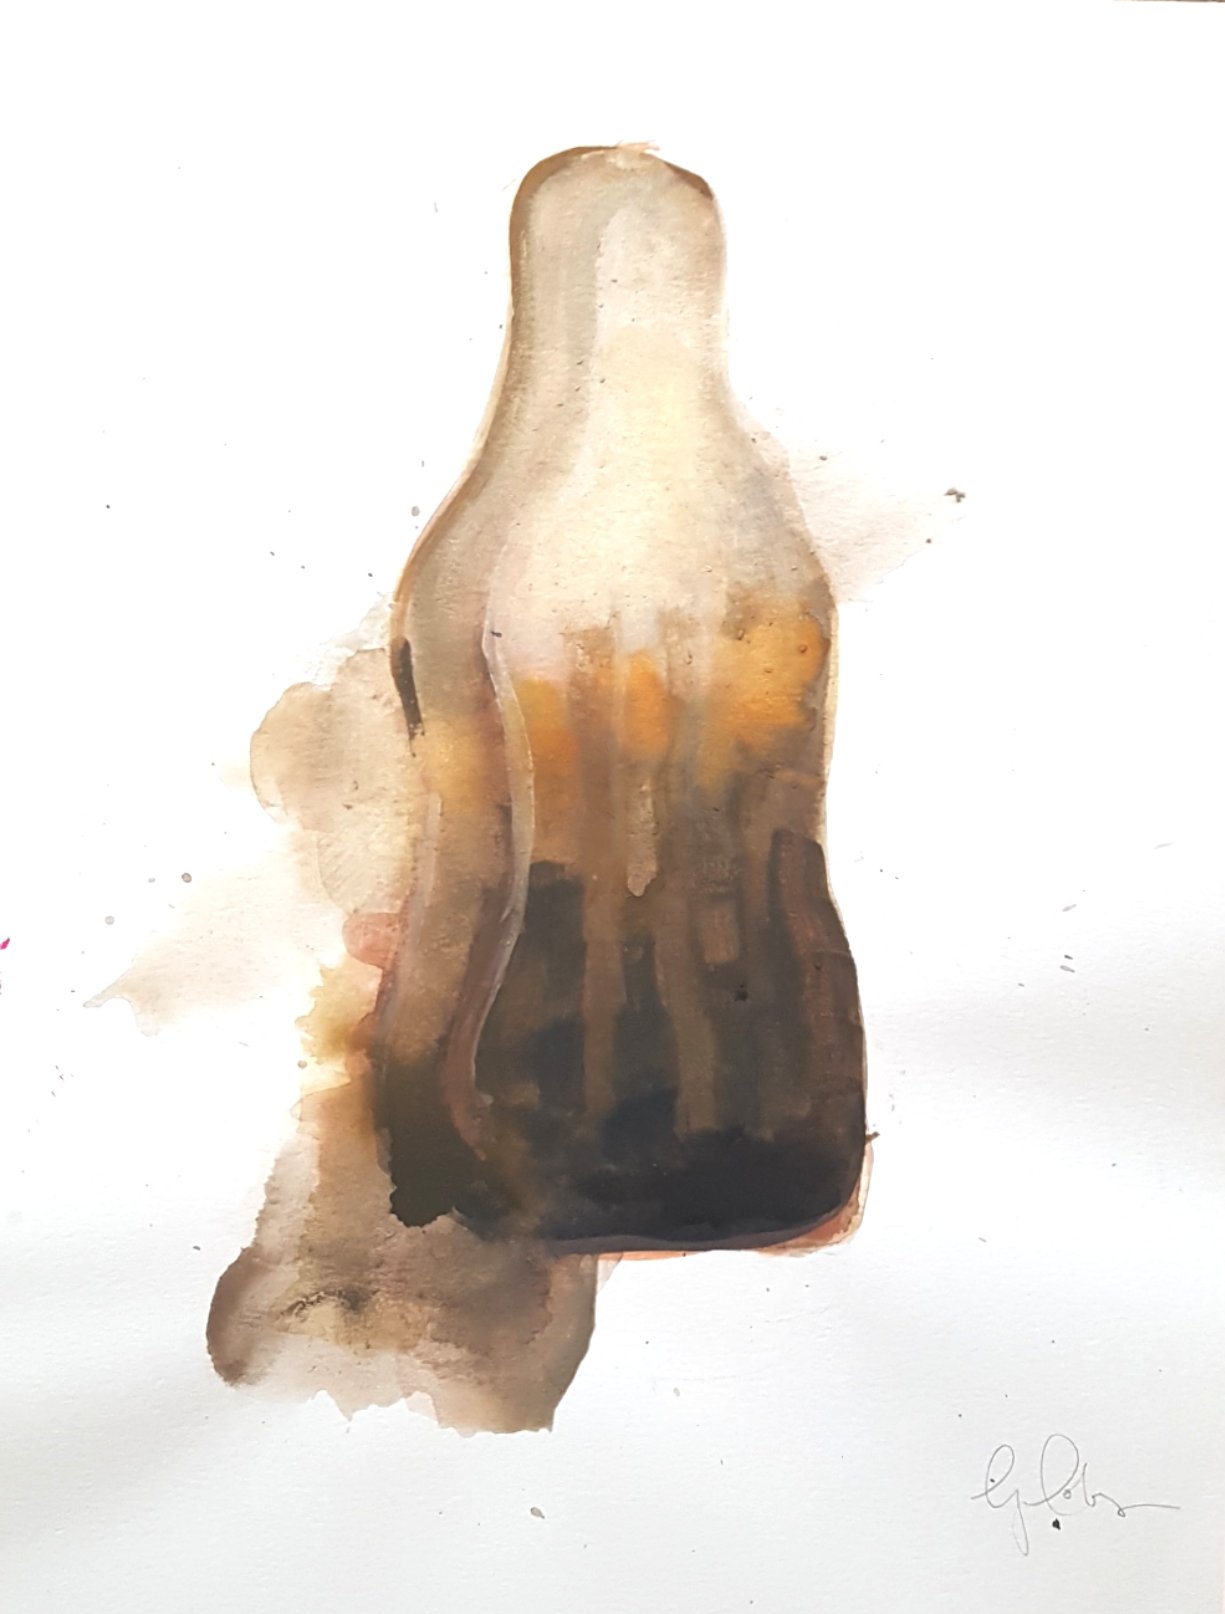 Original artwork for Cola bottle